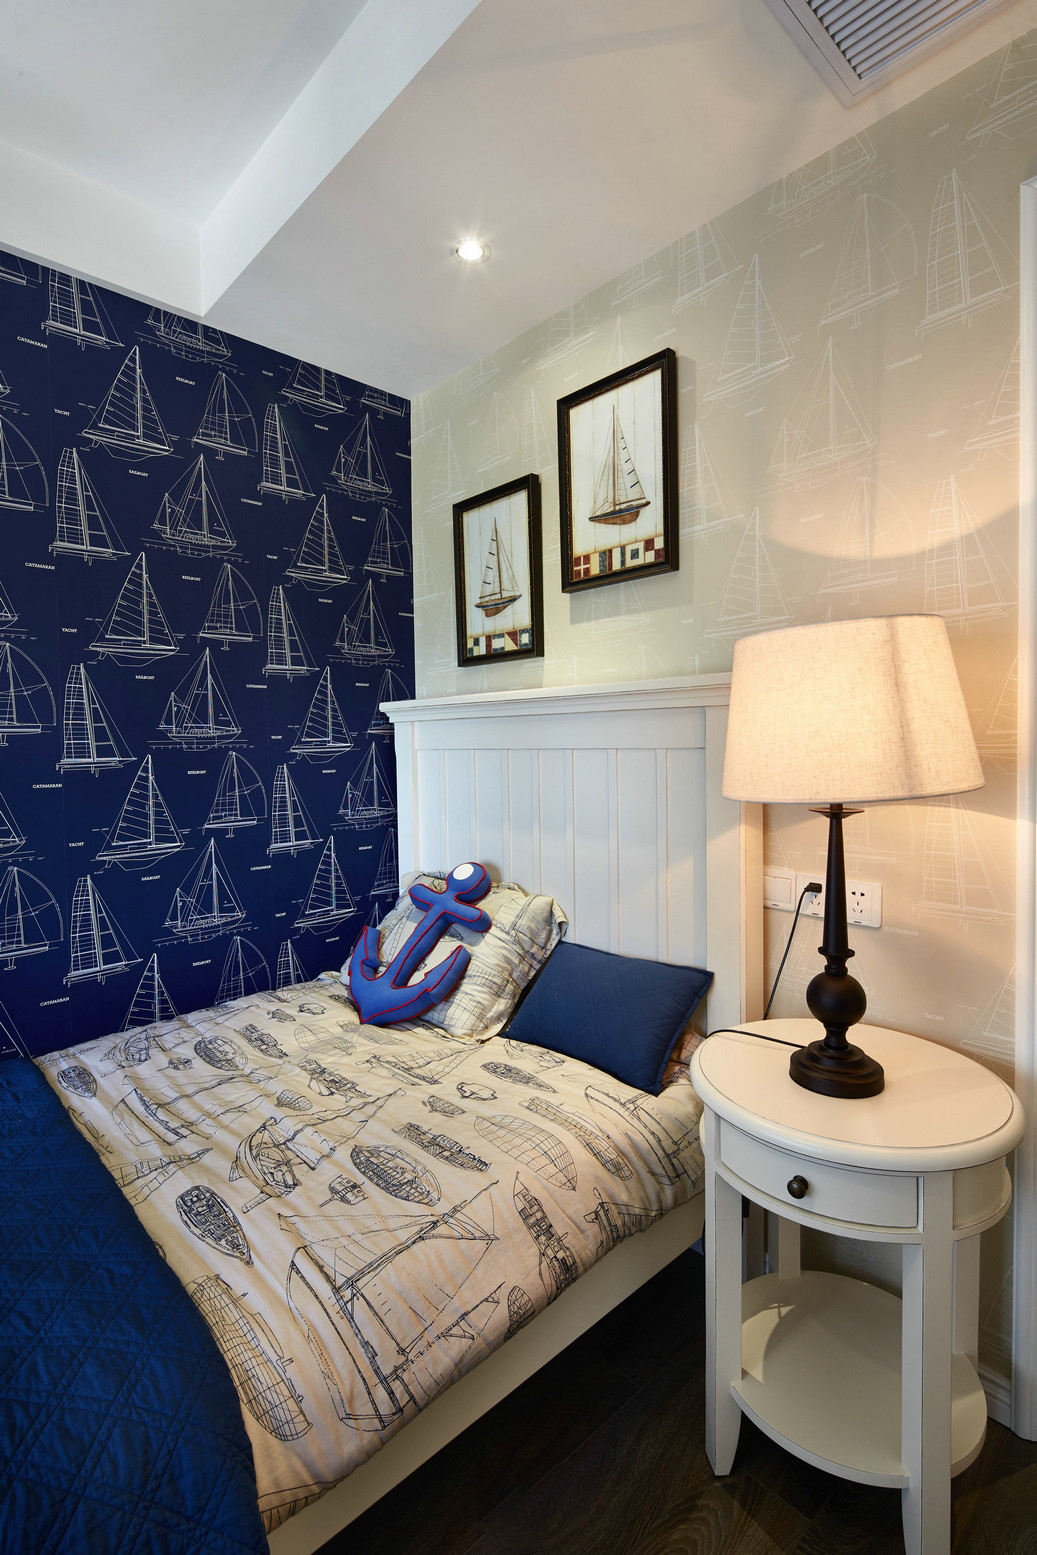 深蓝色美式地中海风情小卧室背景墙效果图